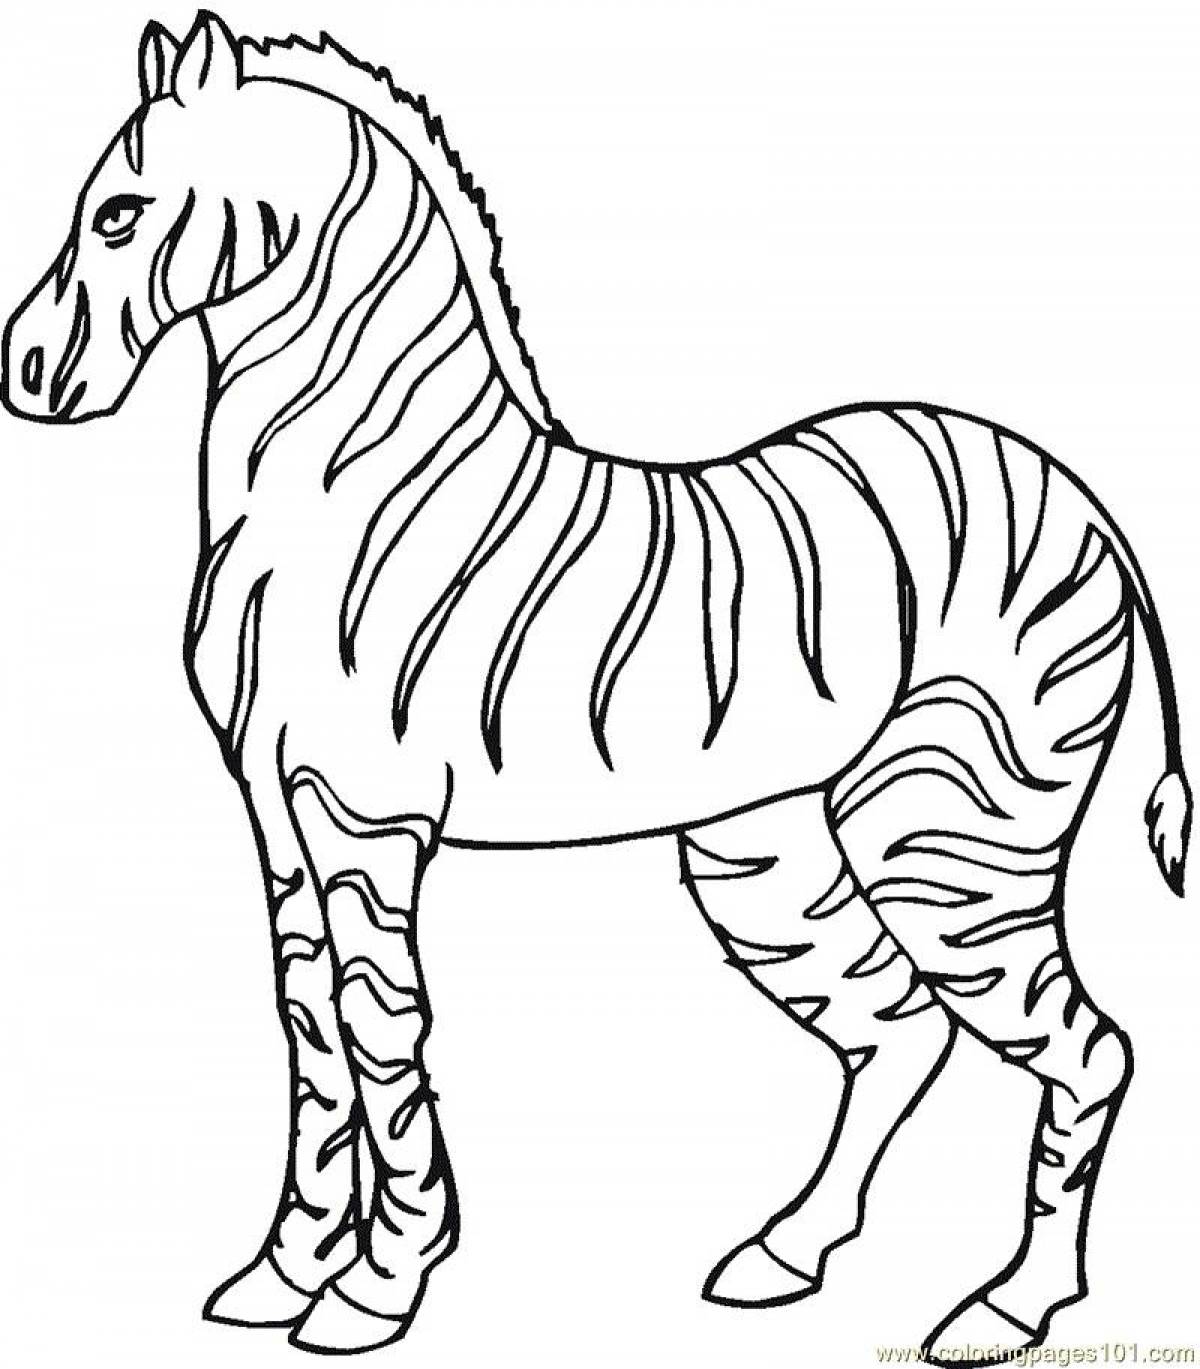 Забавная раскраска зебра для детей